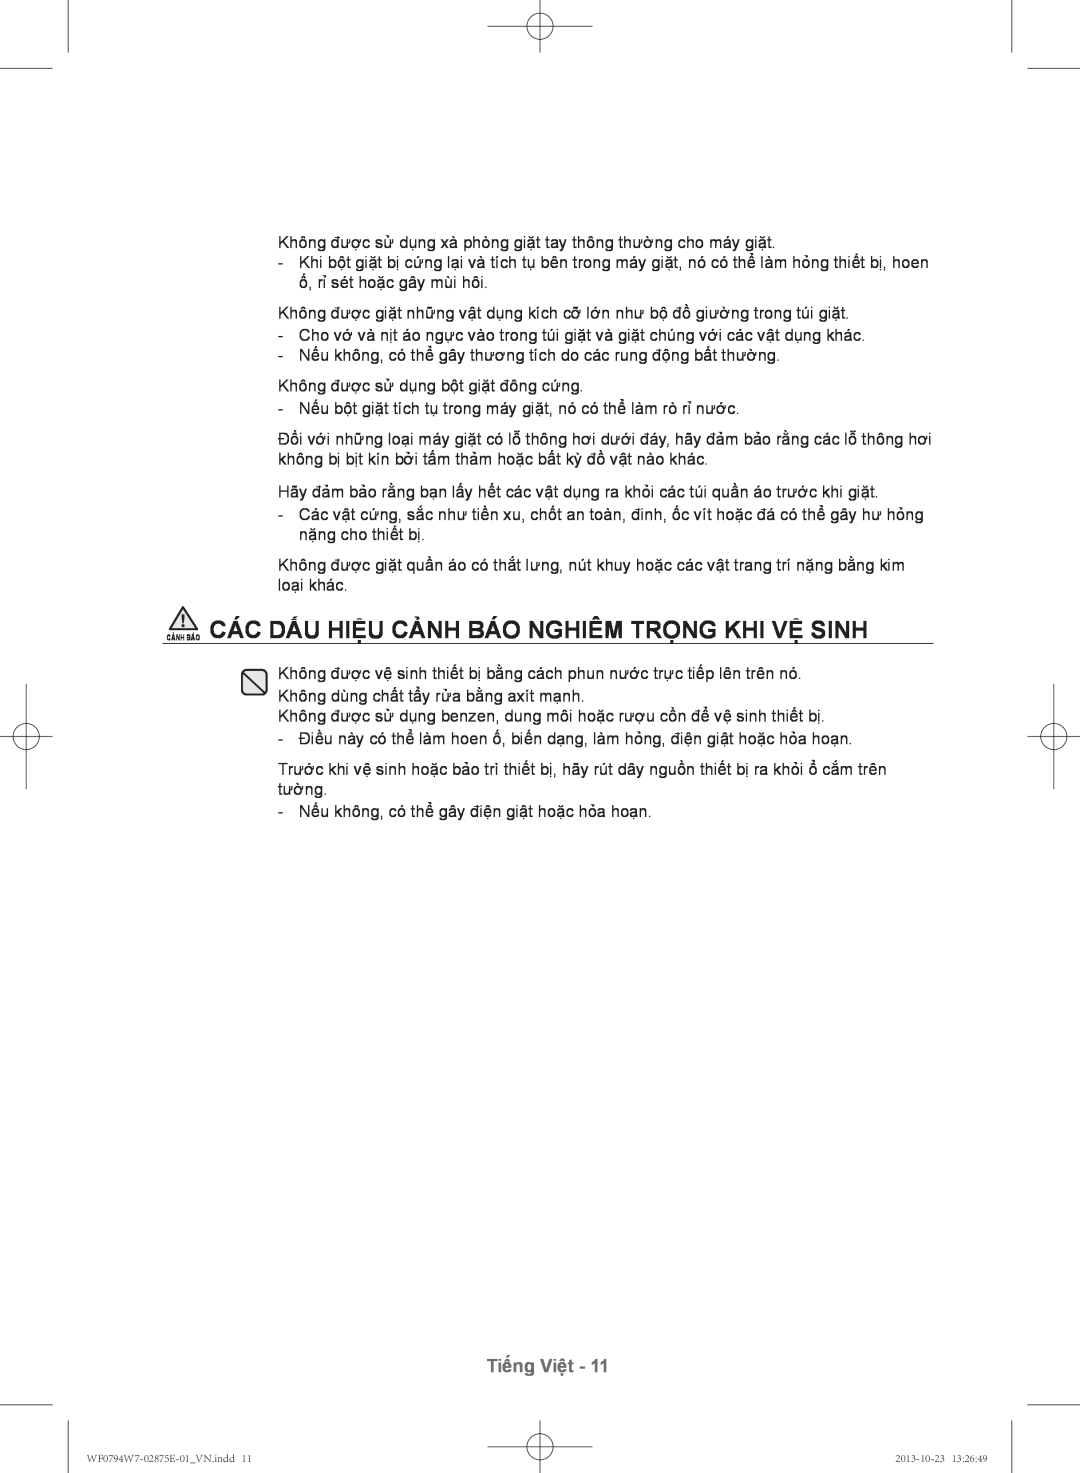 Samsung WF0794W7E9/XSV manual Cảnh Báo Các Dấu Hiệu Cảnh Báo Nghiêm Trọng Khi Vệ Sinh, Tiếng Việt 